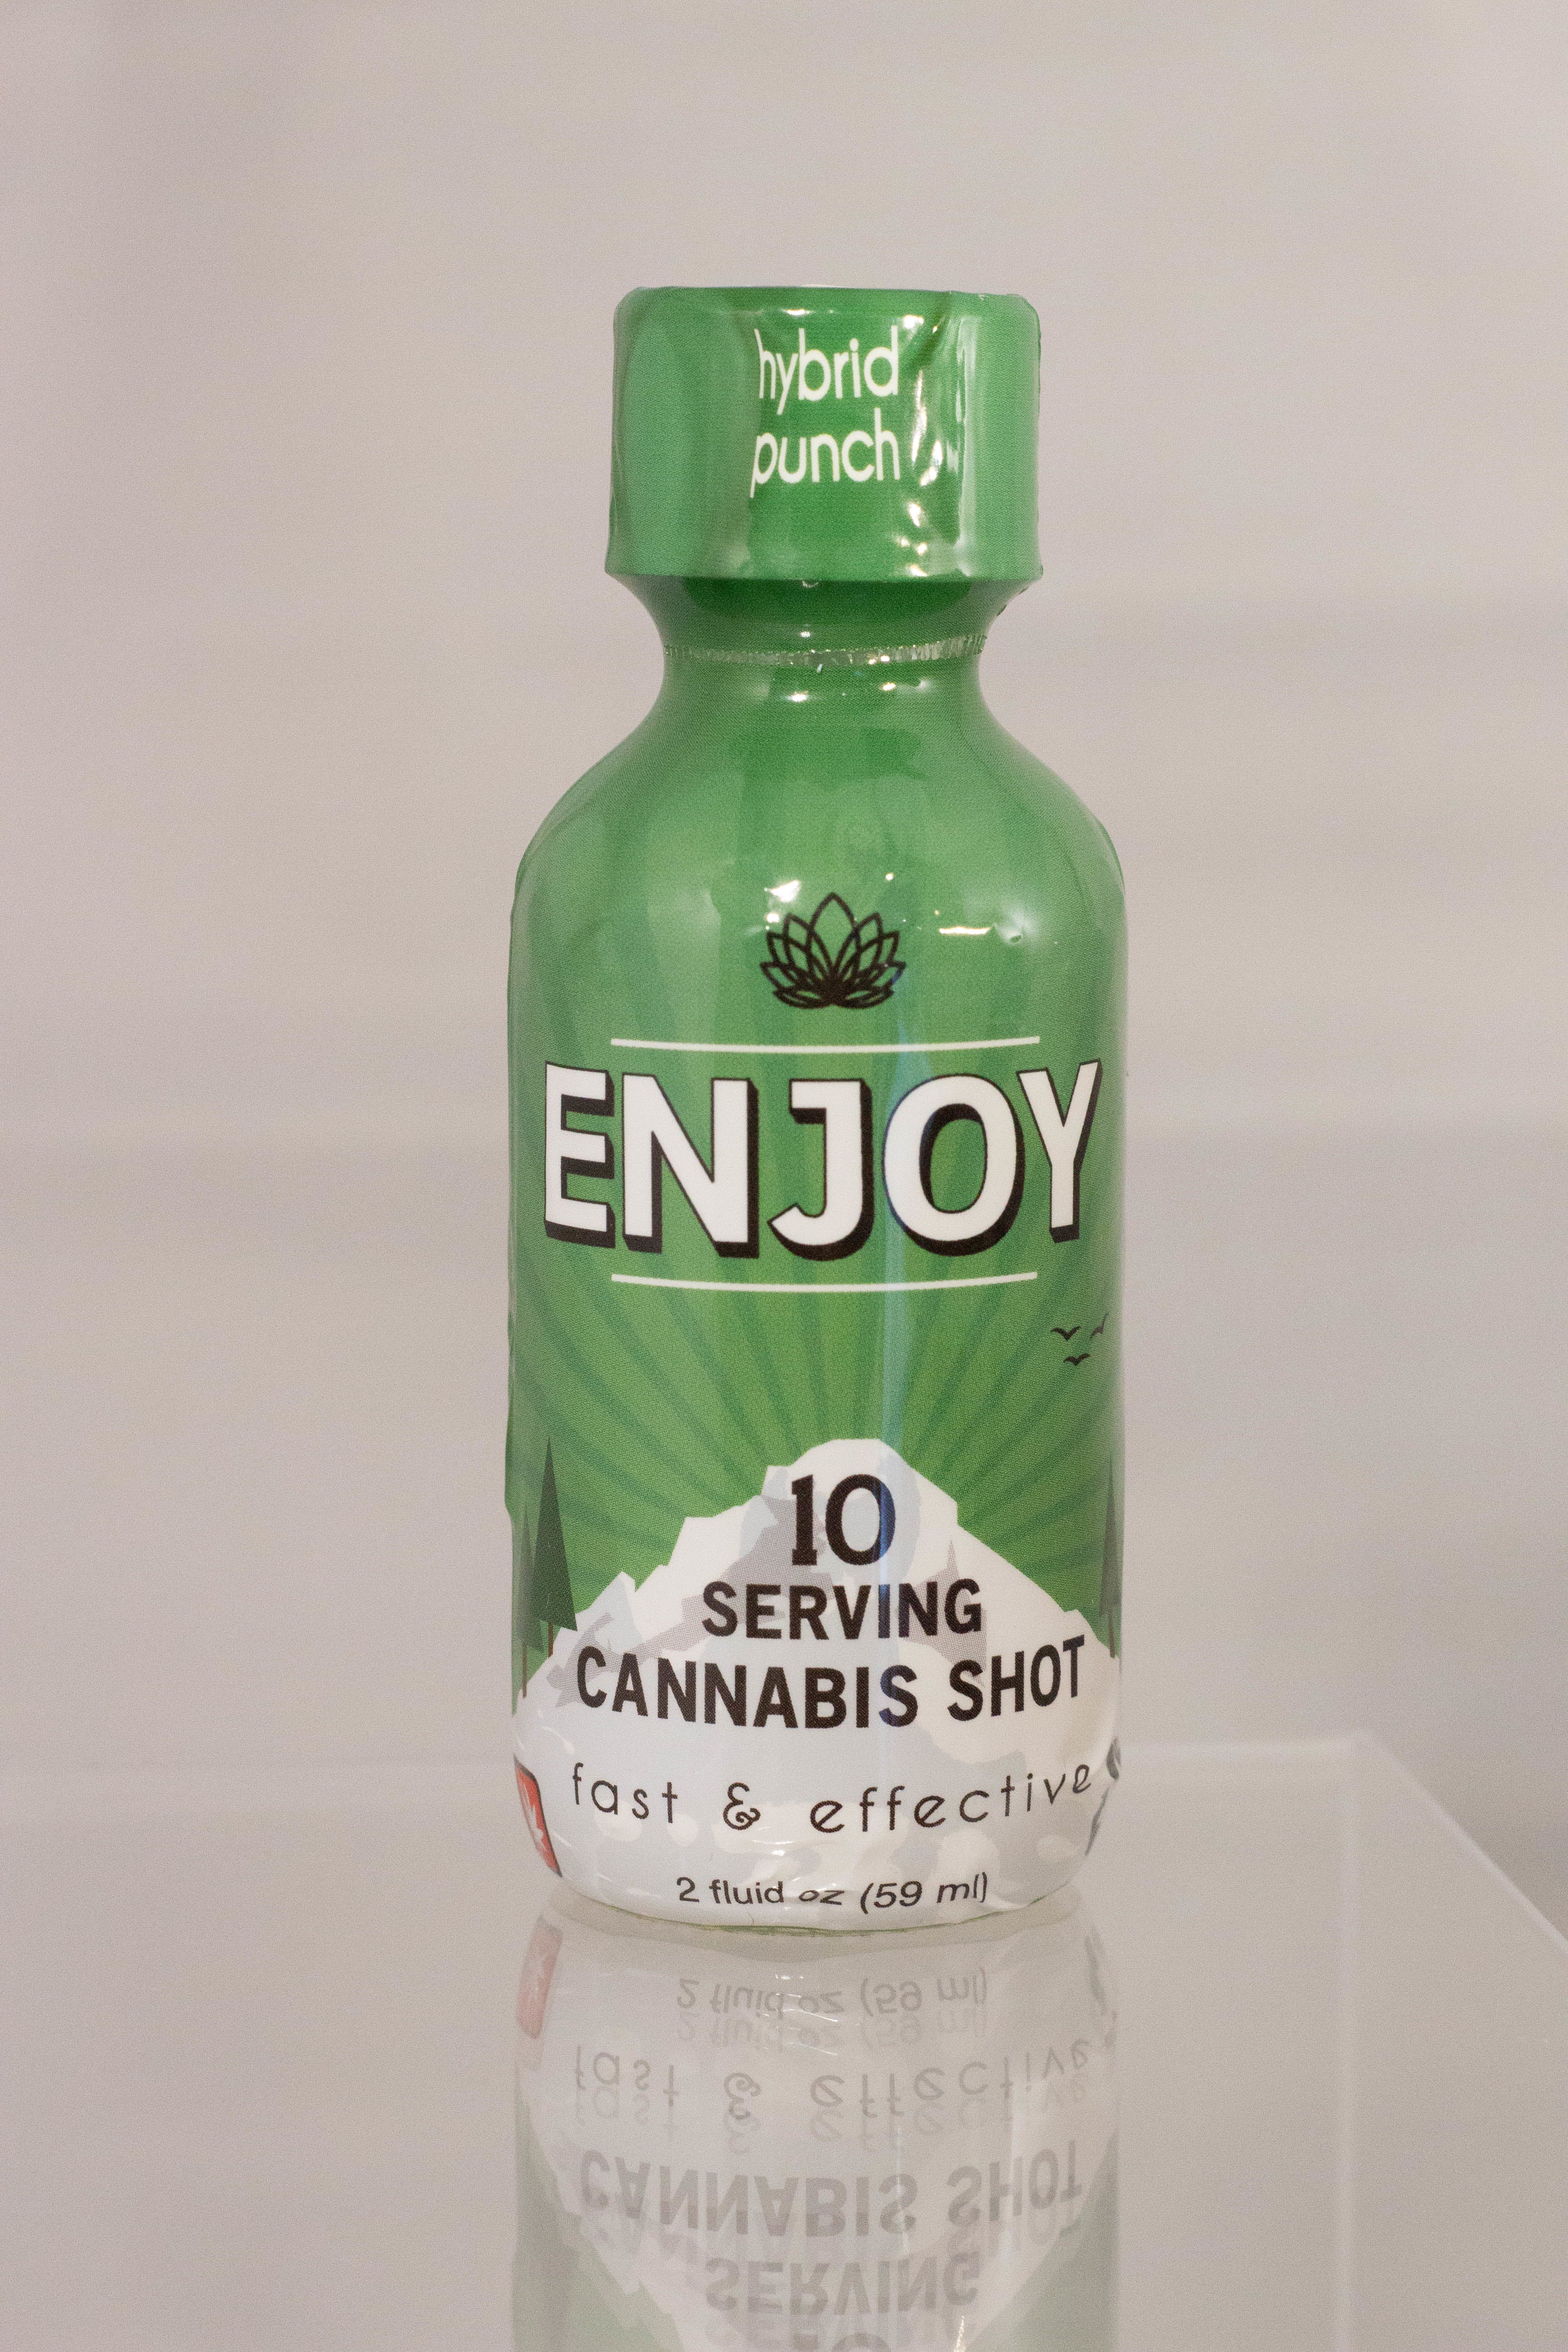 drink-hybrid-punch-enjoy-cannabis-shot